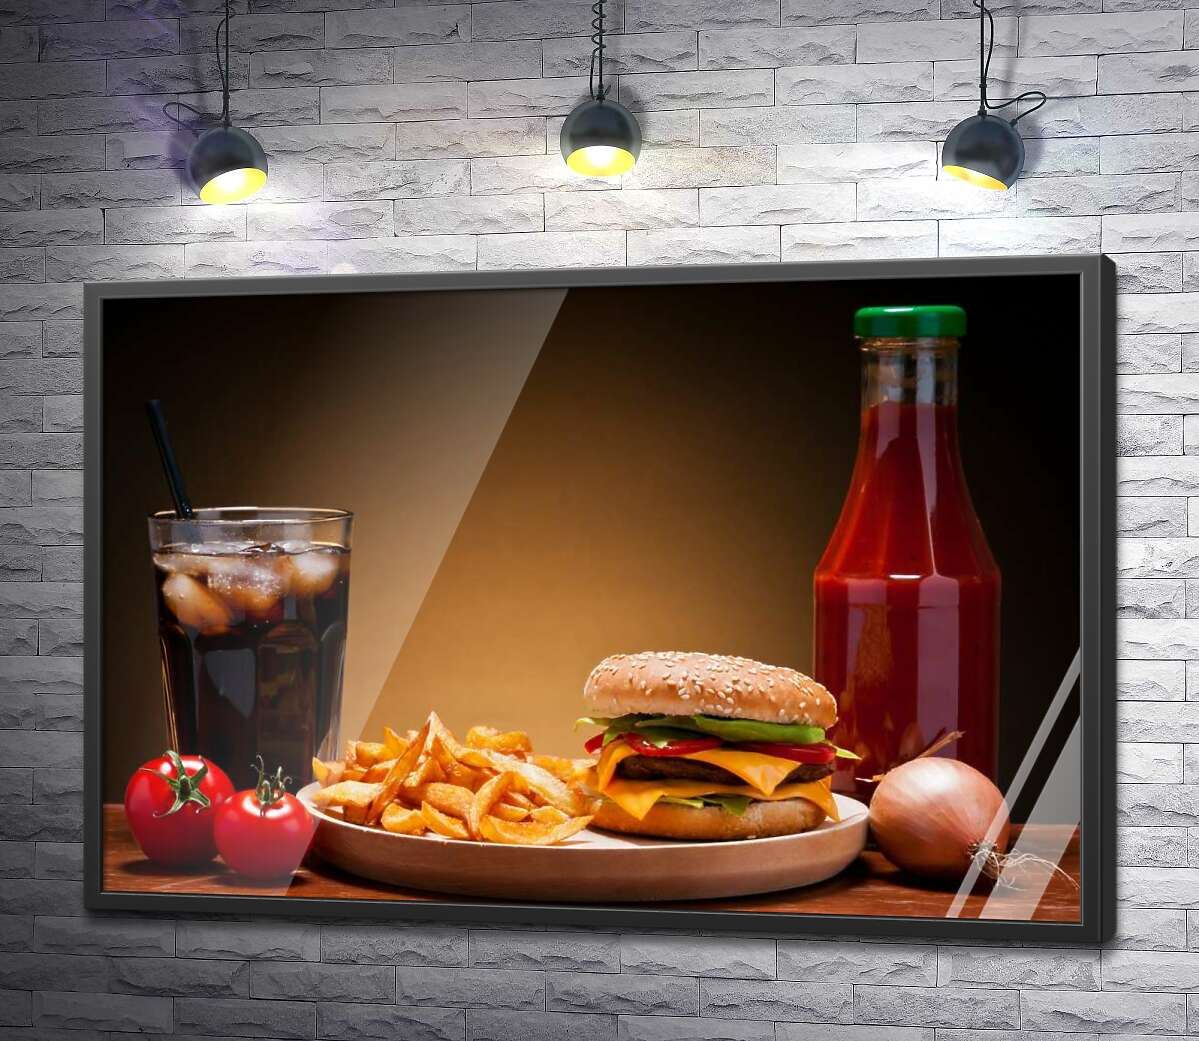 постер Бургер, картофель-фри и кетчуп с холодной Кока-колой (Coca-cola)